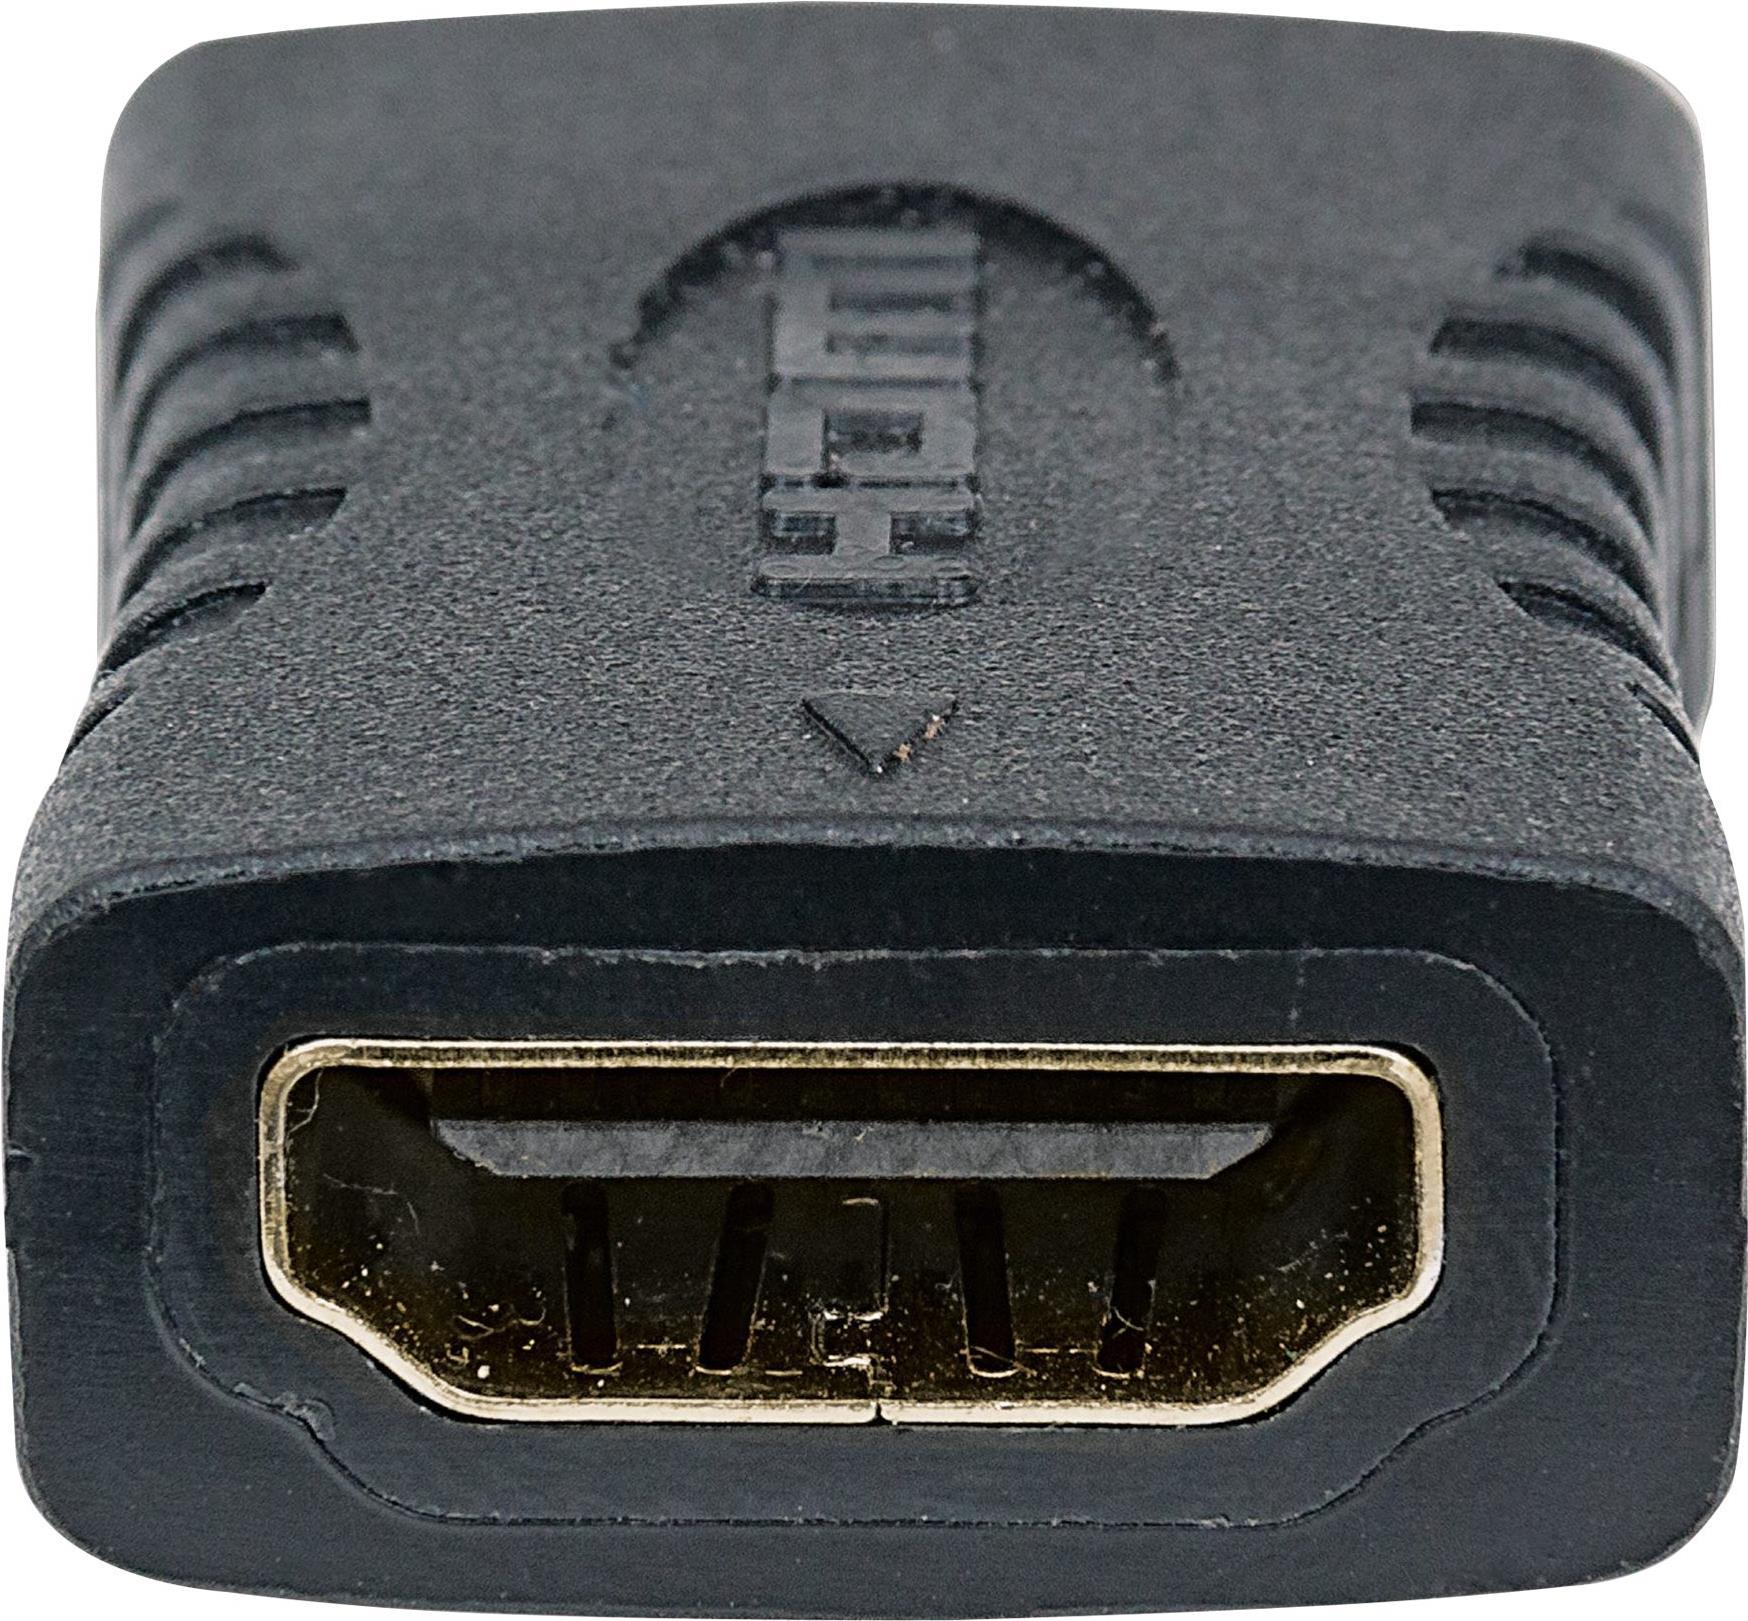 MANHATTAN HDMI-Kupplung HDMI A-Buchse auf A-Buchse Verbindet zwei HDMI-Kabel Unterstuetzt 4K-Aufloesung (353465)